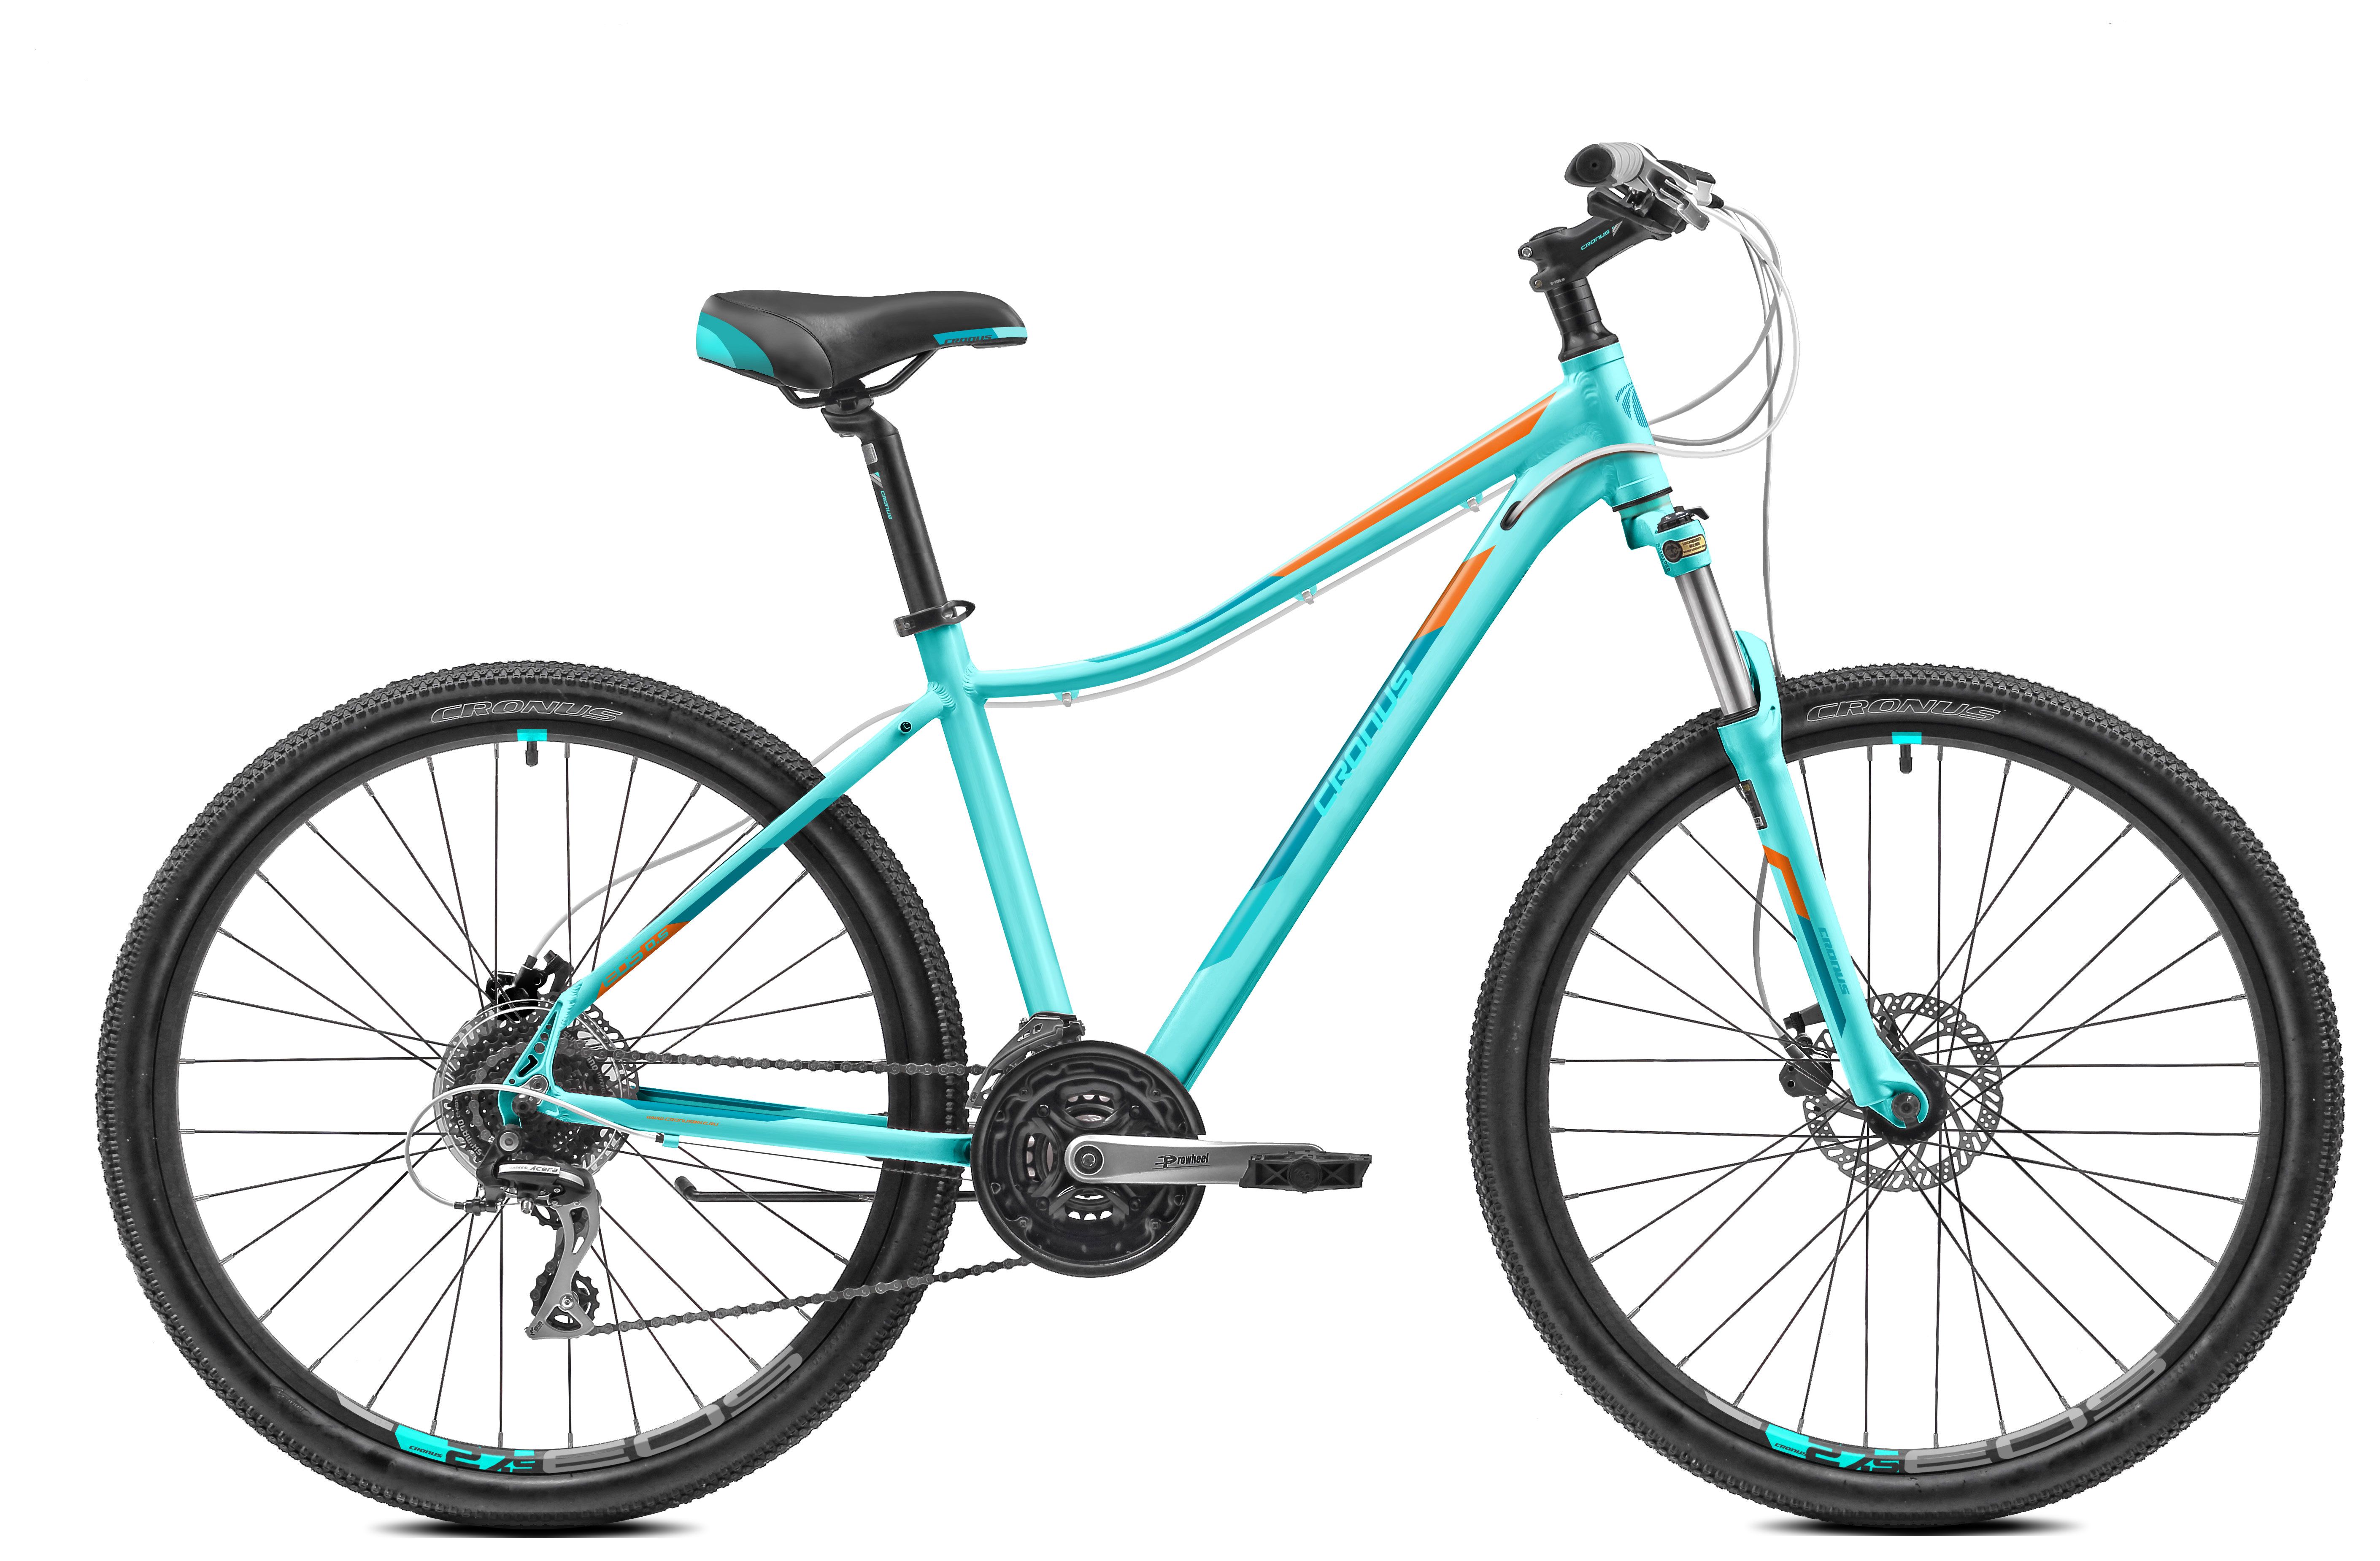  Отзывы о Женском велосипеде Cronus EOS 0.6 27,5 2018